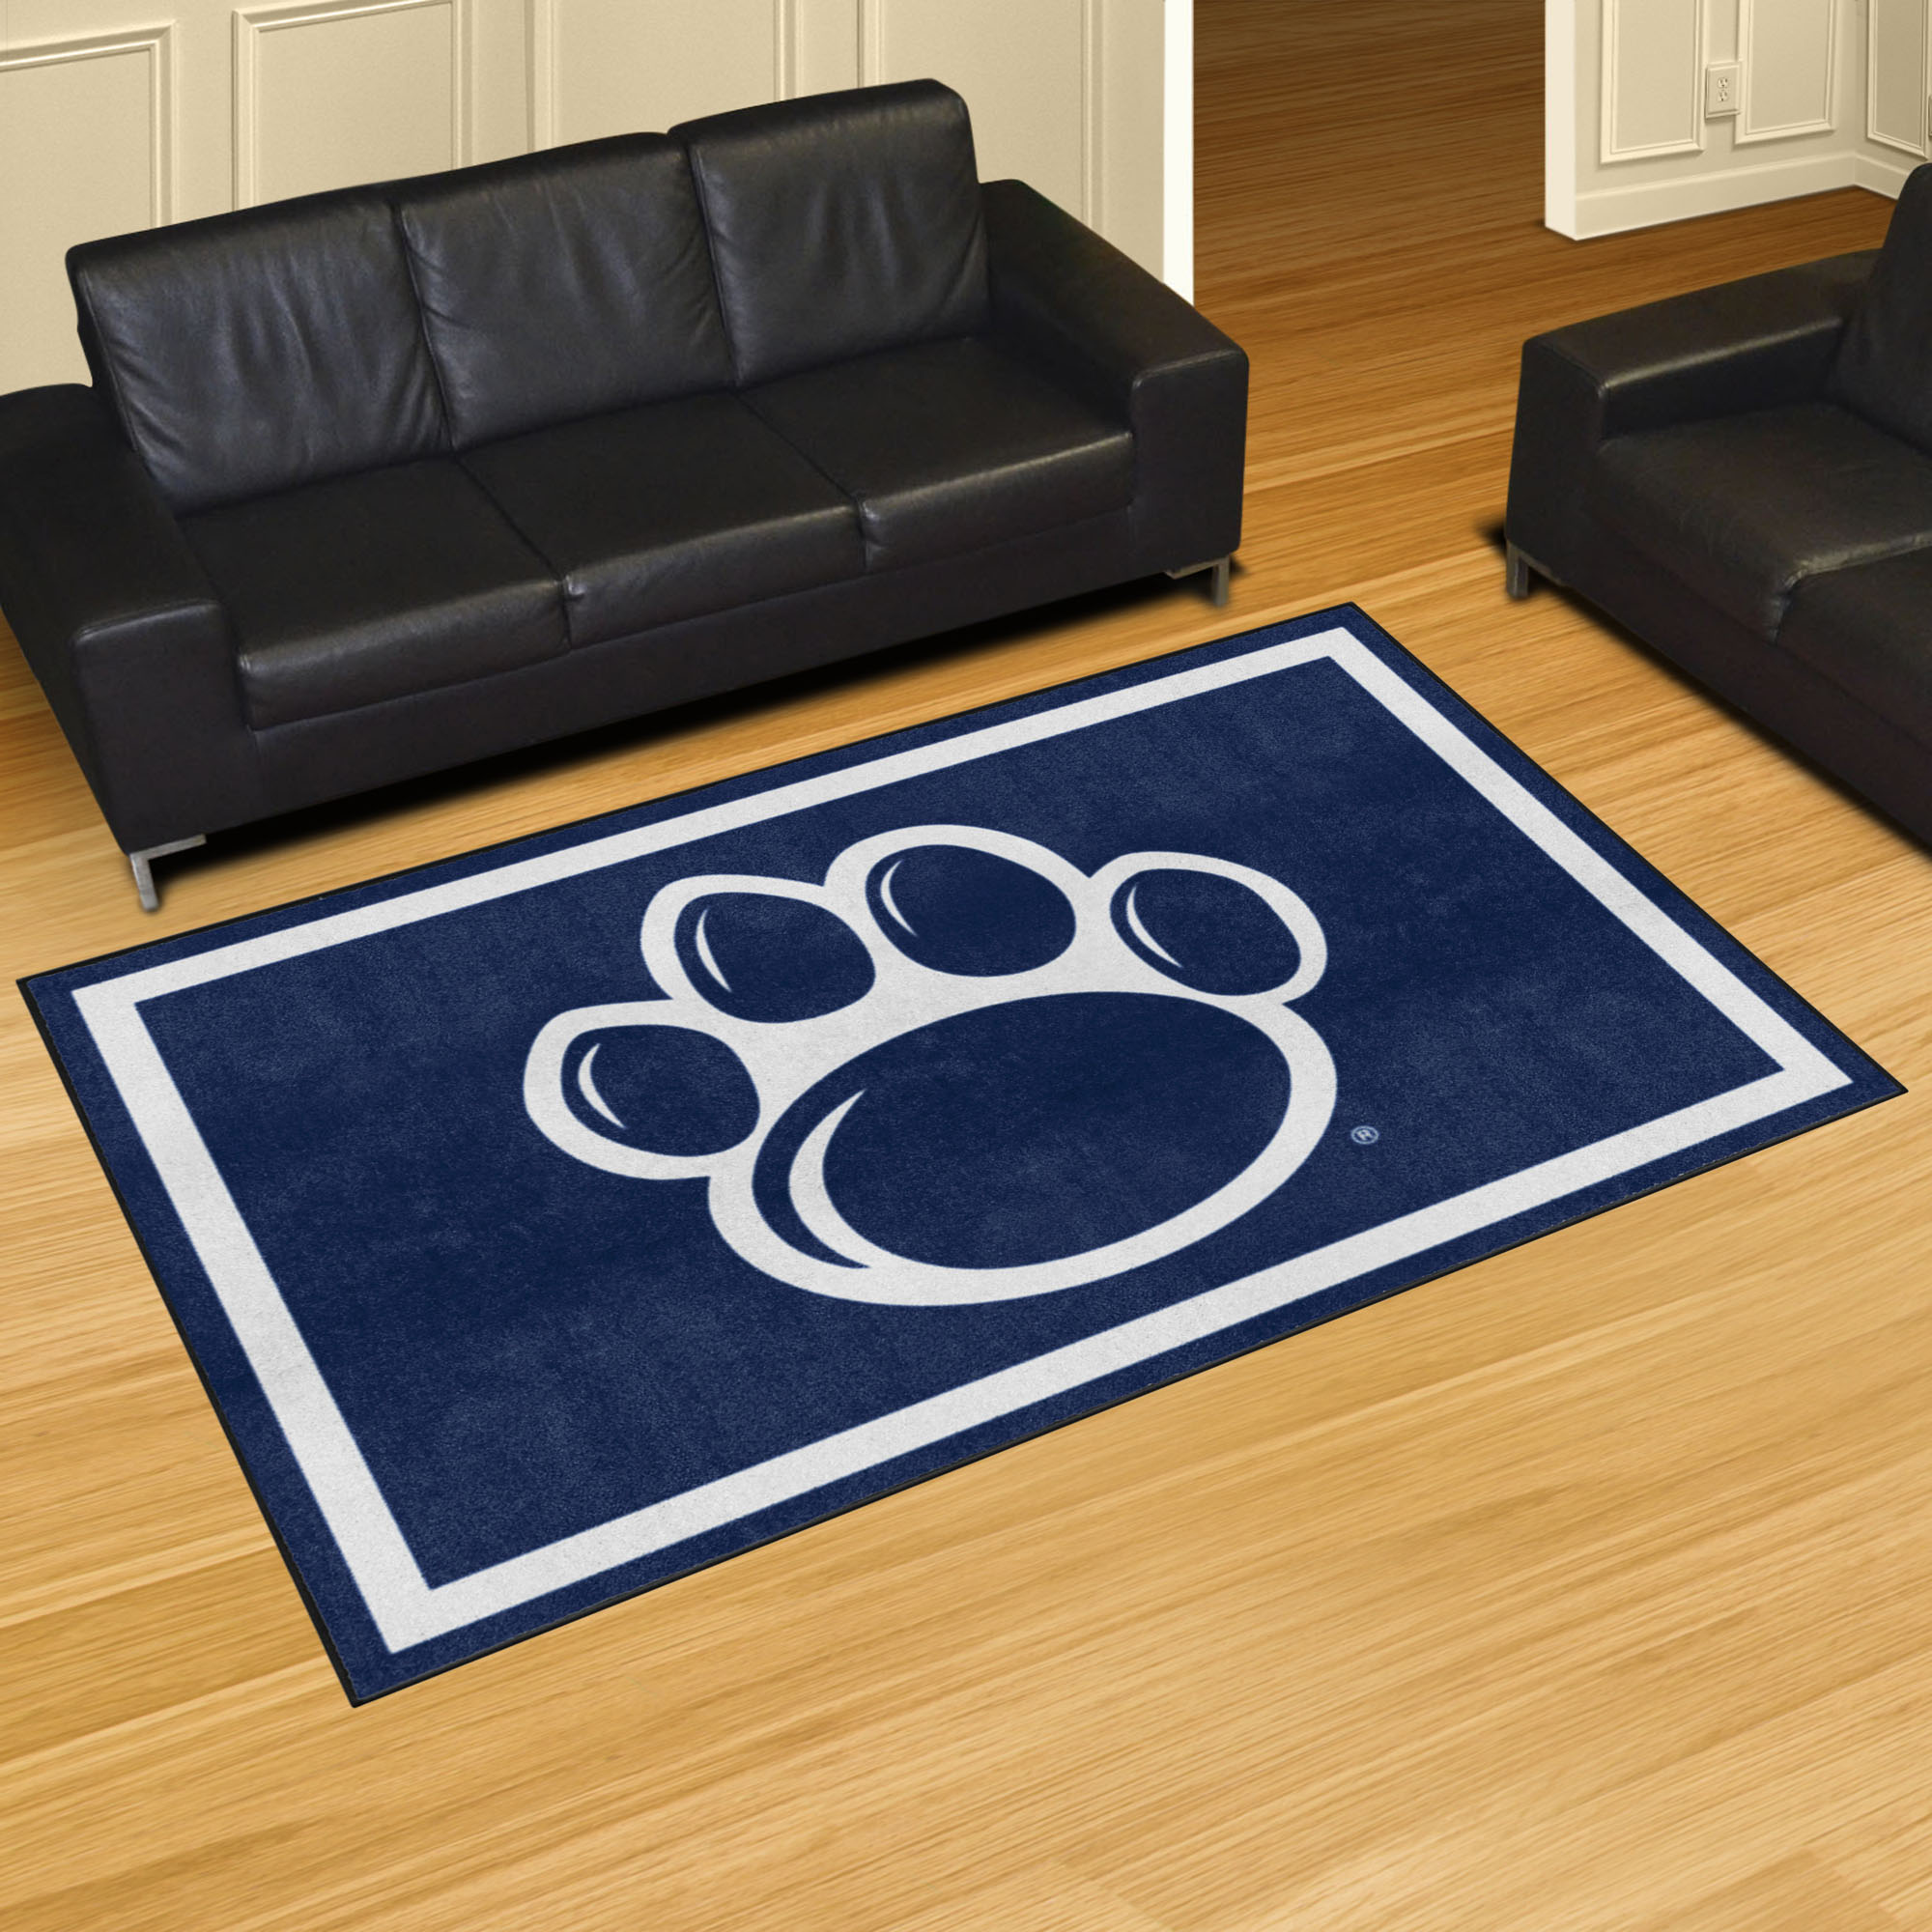 Penn State Nittany Lions Area Rug - 5' x 8' Alt Logo Nylon